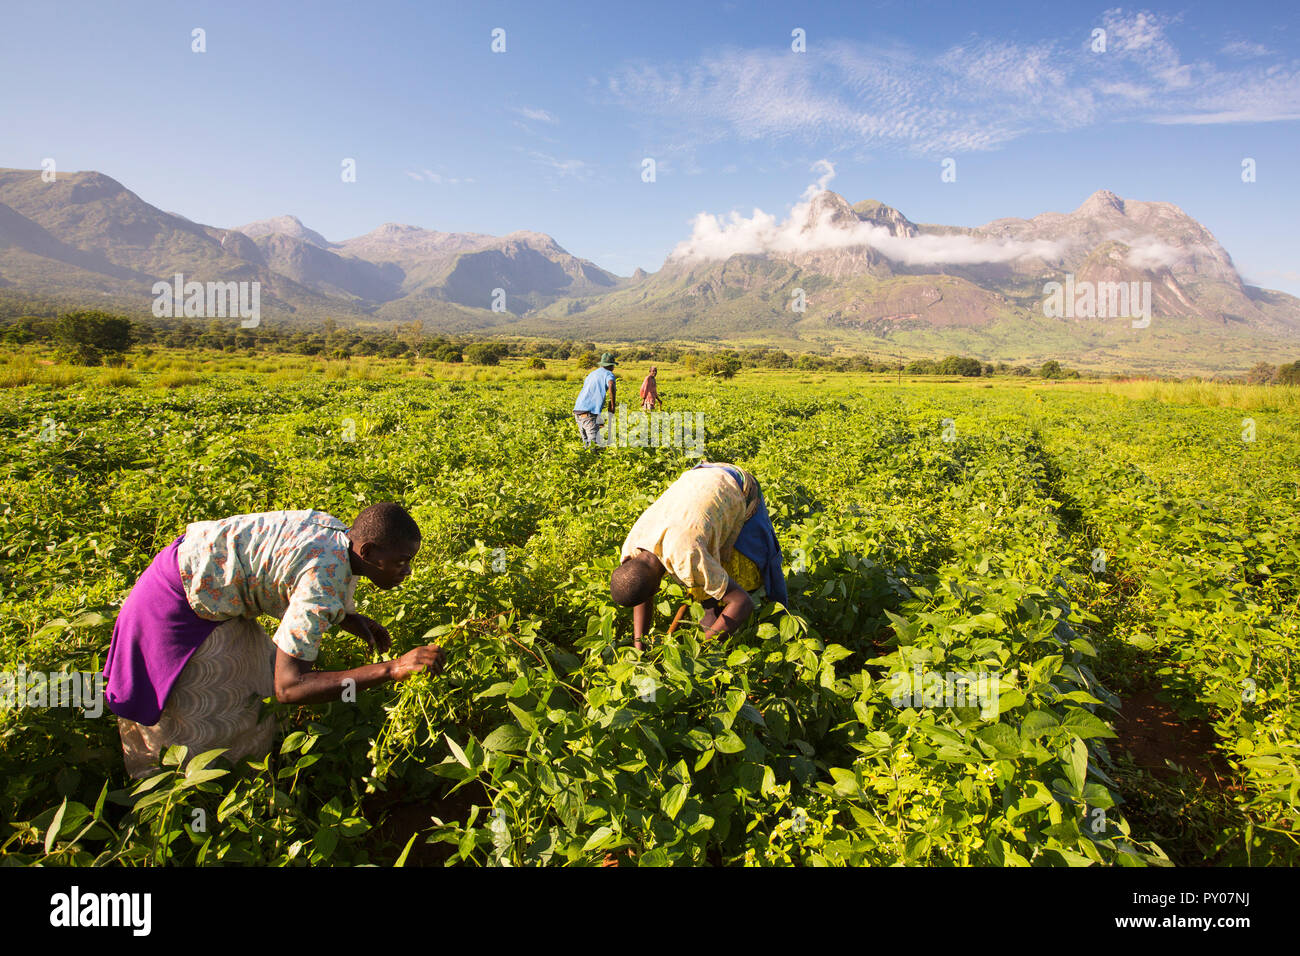 Lavoratori malawiana fatica in un raccolto di soay sotto il monte Mulanje. In questo più poveri dei paesi africani, molti lavoratori agricoli guadagnano meno ÂỲÂẀÂỲÂ£1 al giorno. Foto Stock